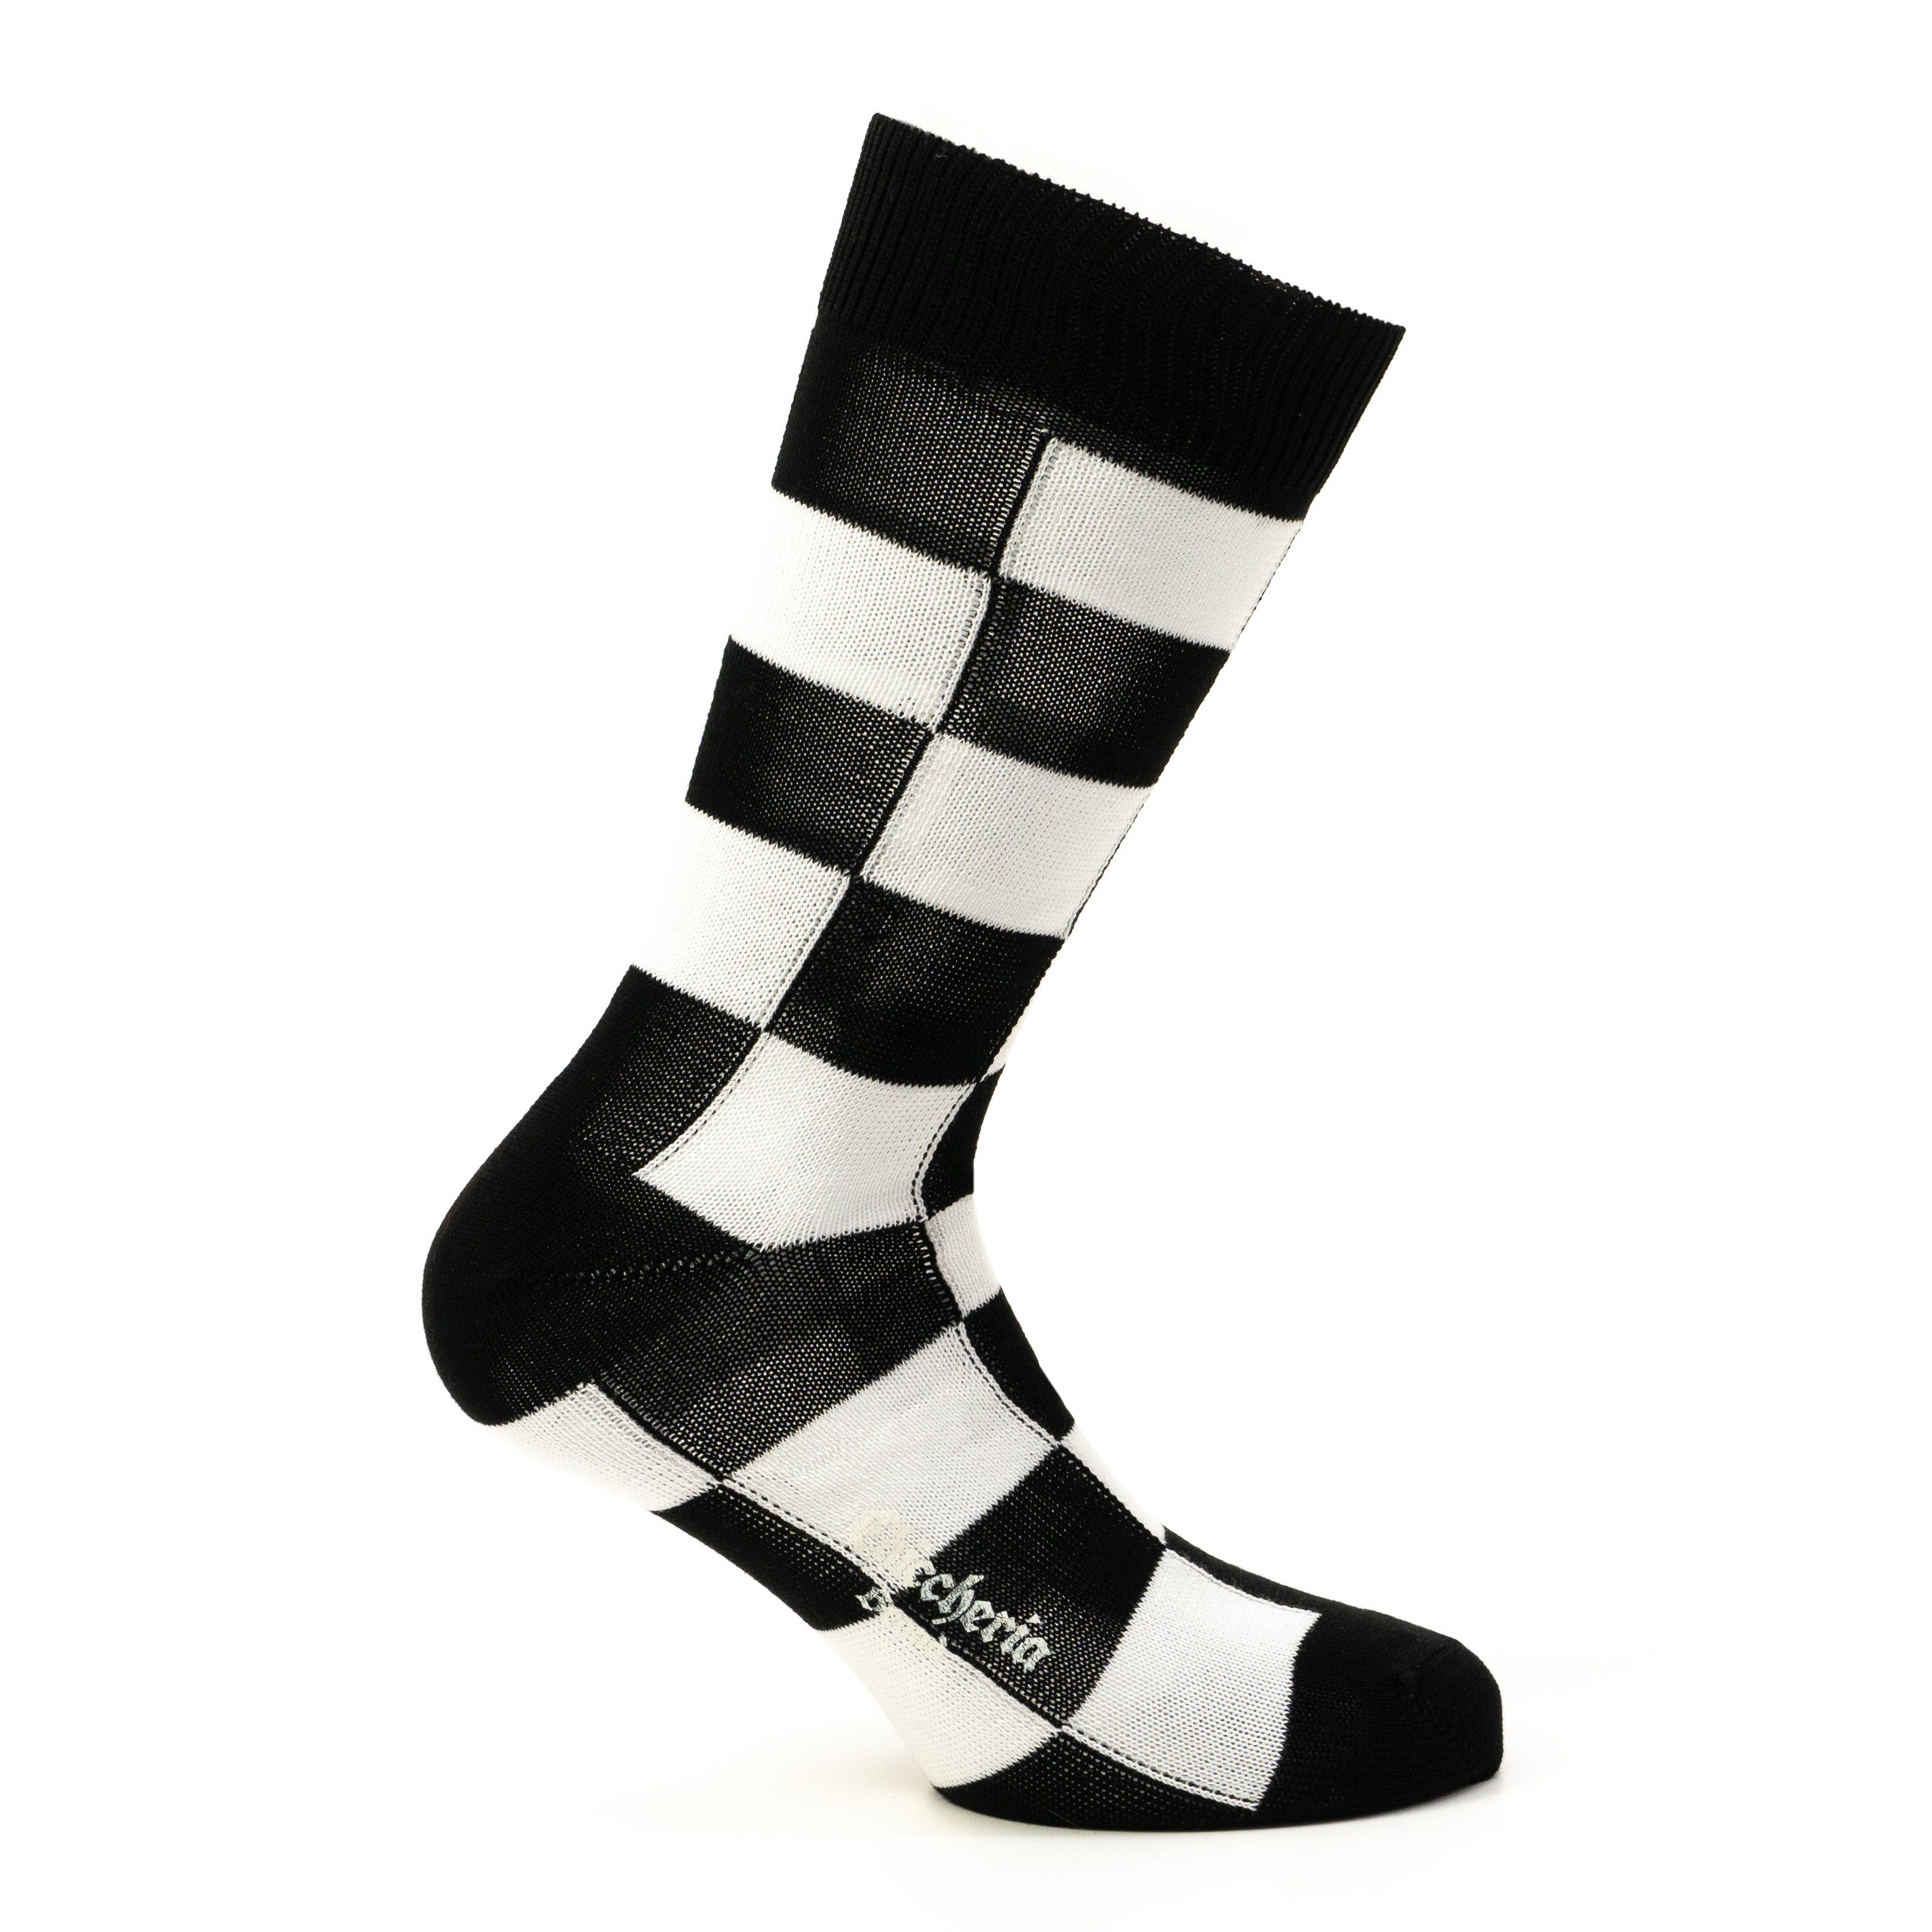 Chiccheria Brand Socken (1 Paar) aus Baumwolle, kariert, Made in Italy by  Bresciani online kaufen | OTTO